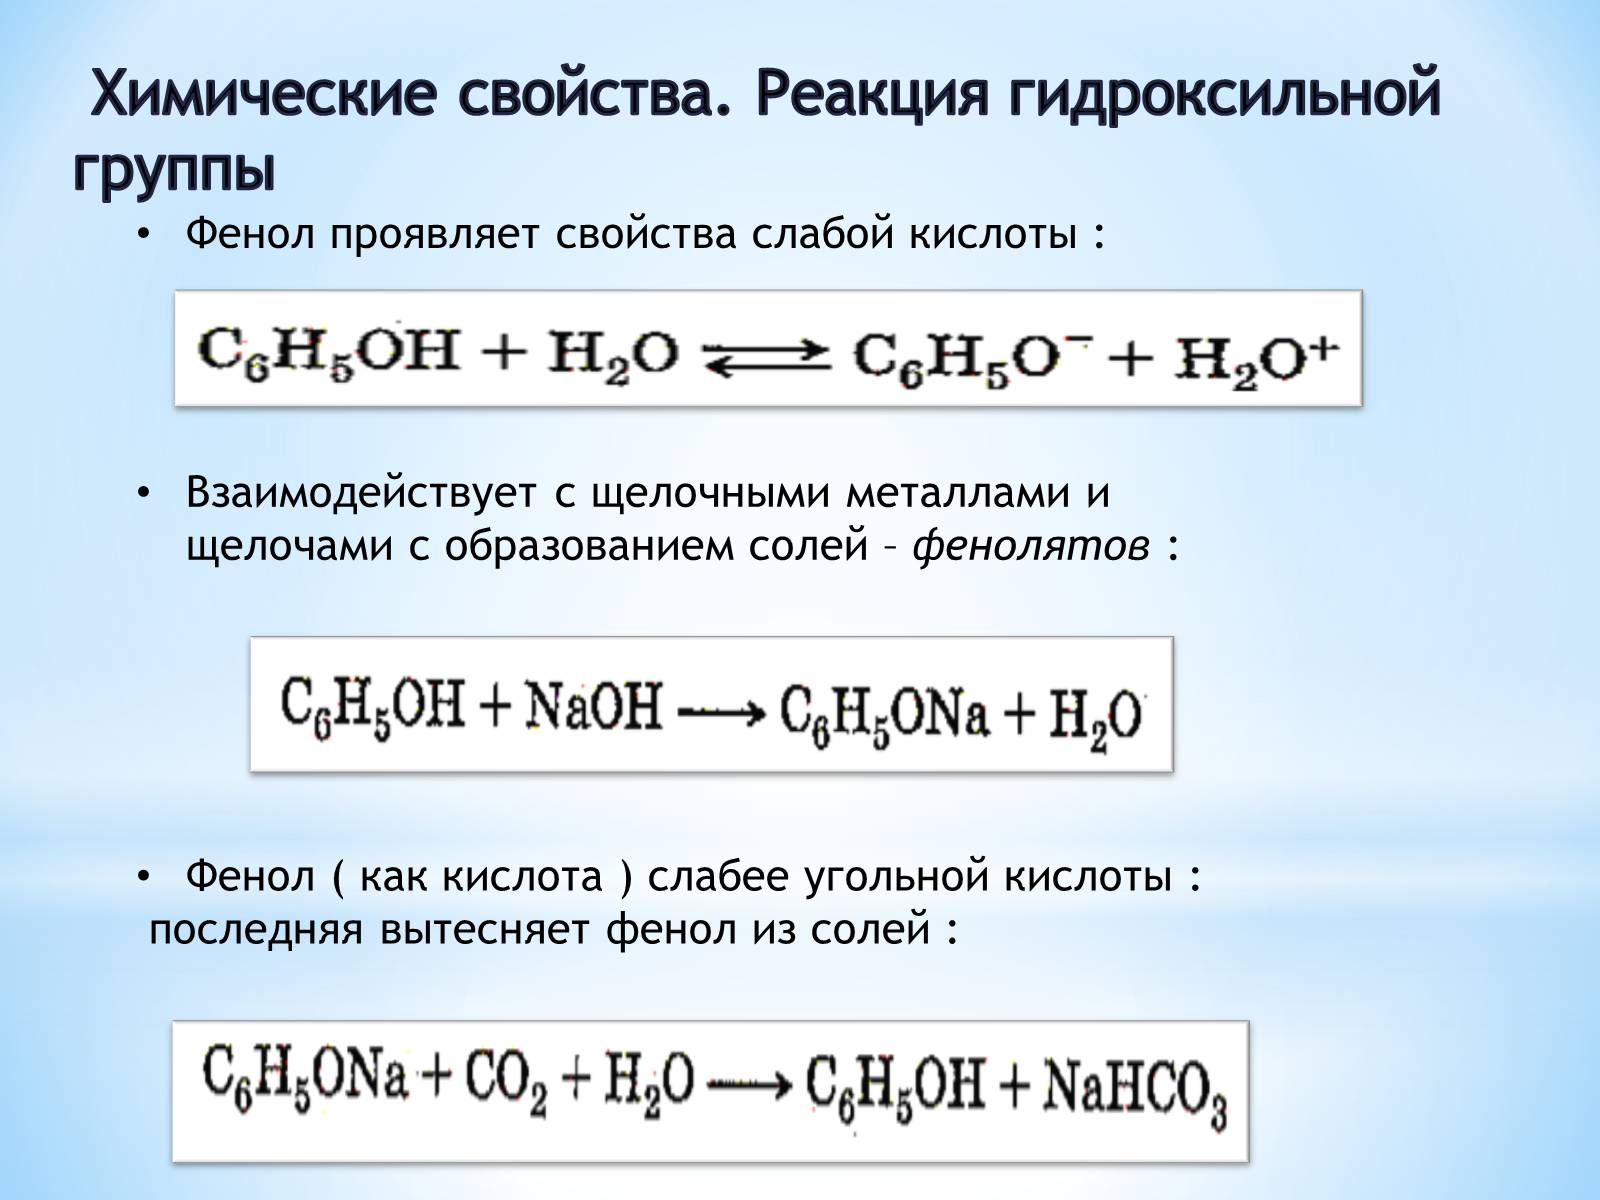 Кислоты с гидроксильной группой. Фенол химические свойства реакции. Химические свойства фенола. Химические реакции фенолов. Фенол слабая кислота.